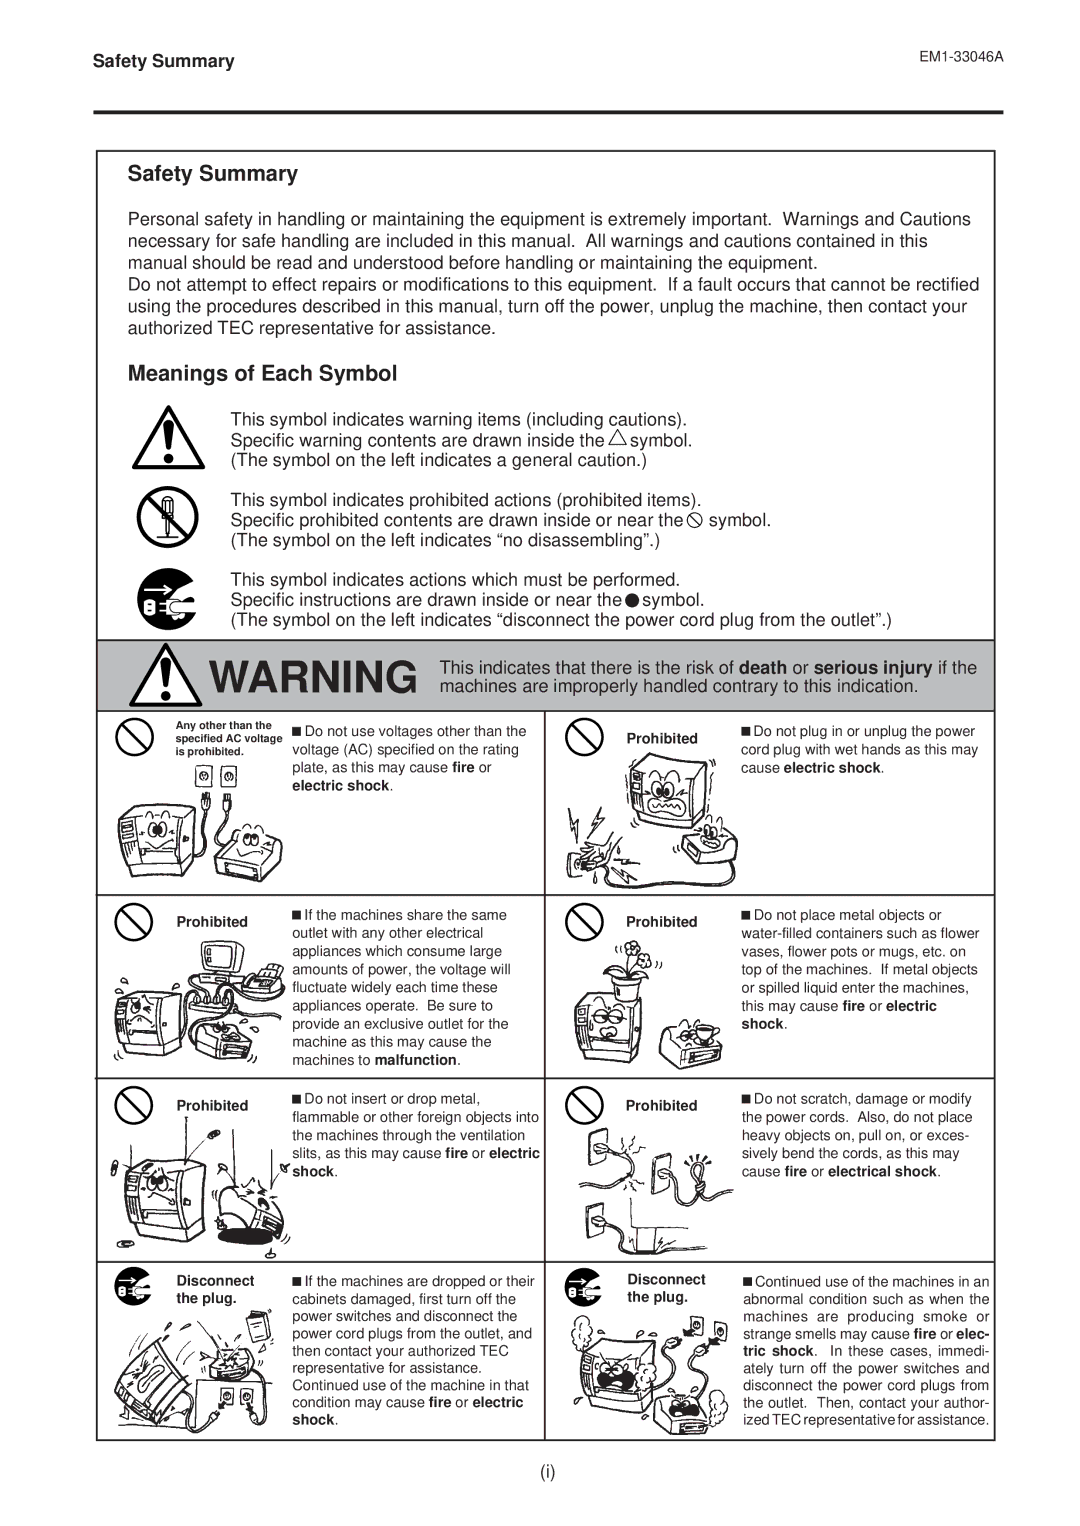 Toshiba EM1-33046AE, B-442-QP owner manual Safety Summary 